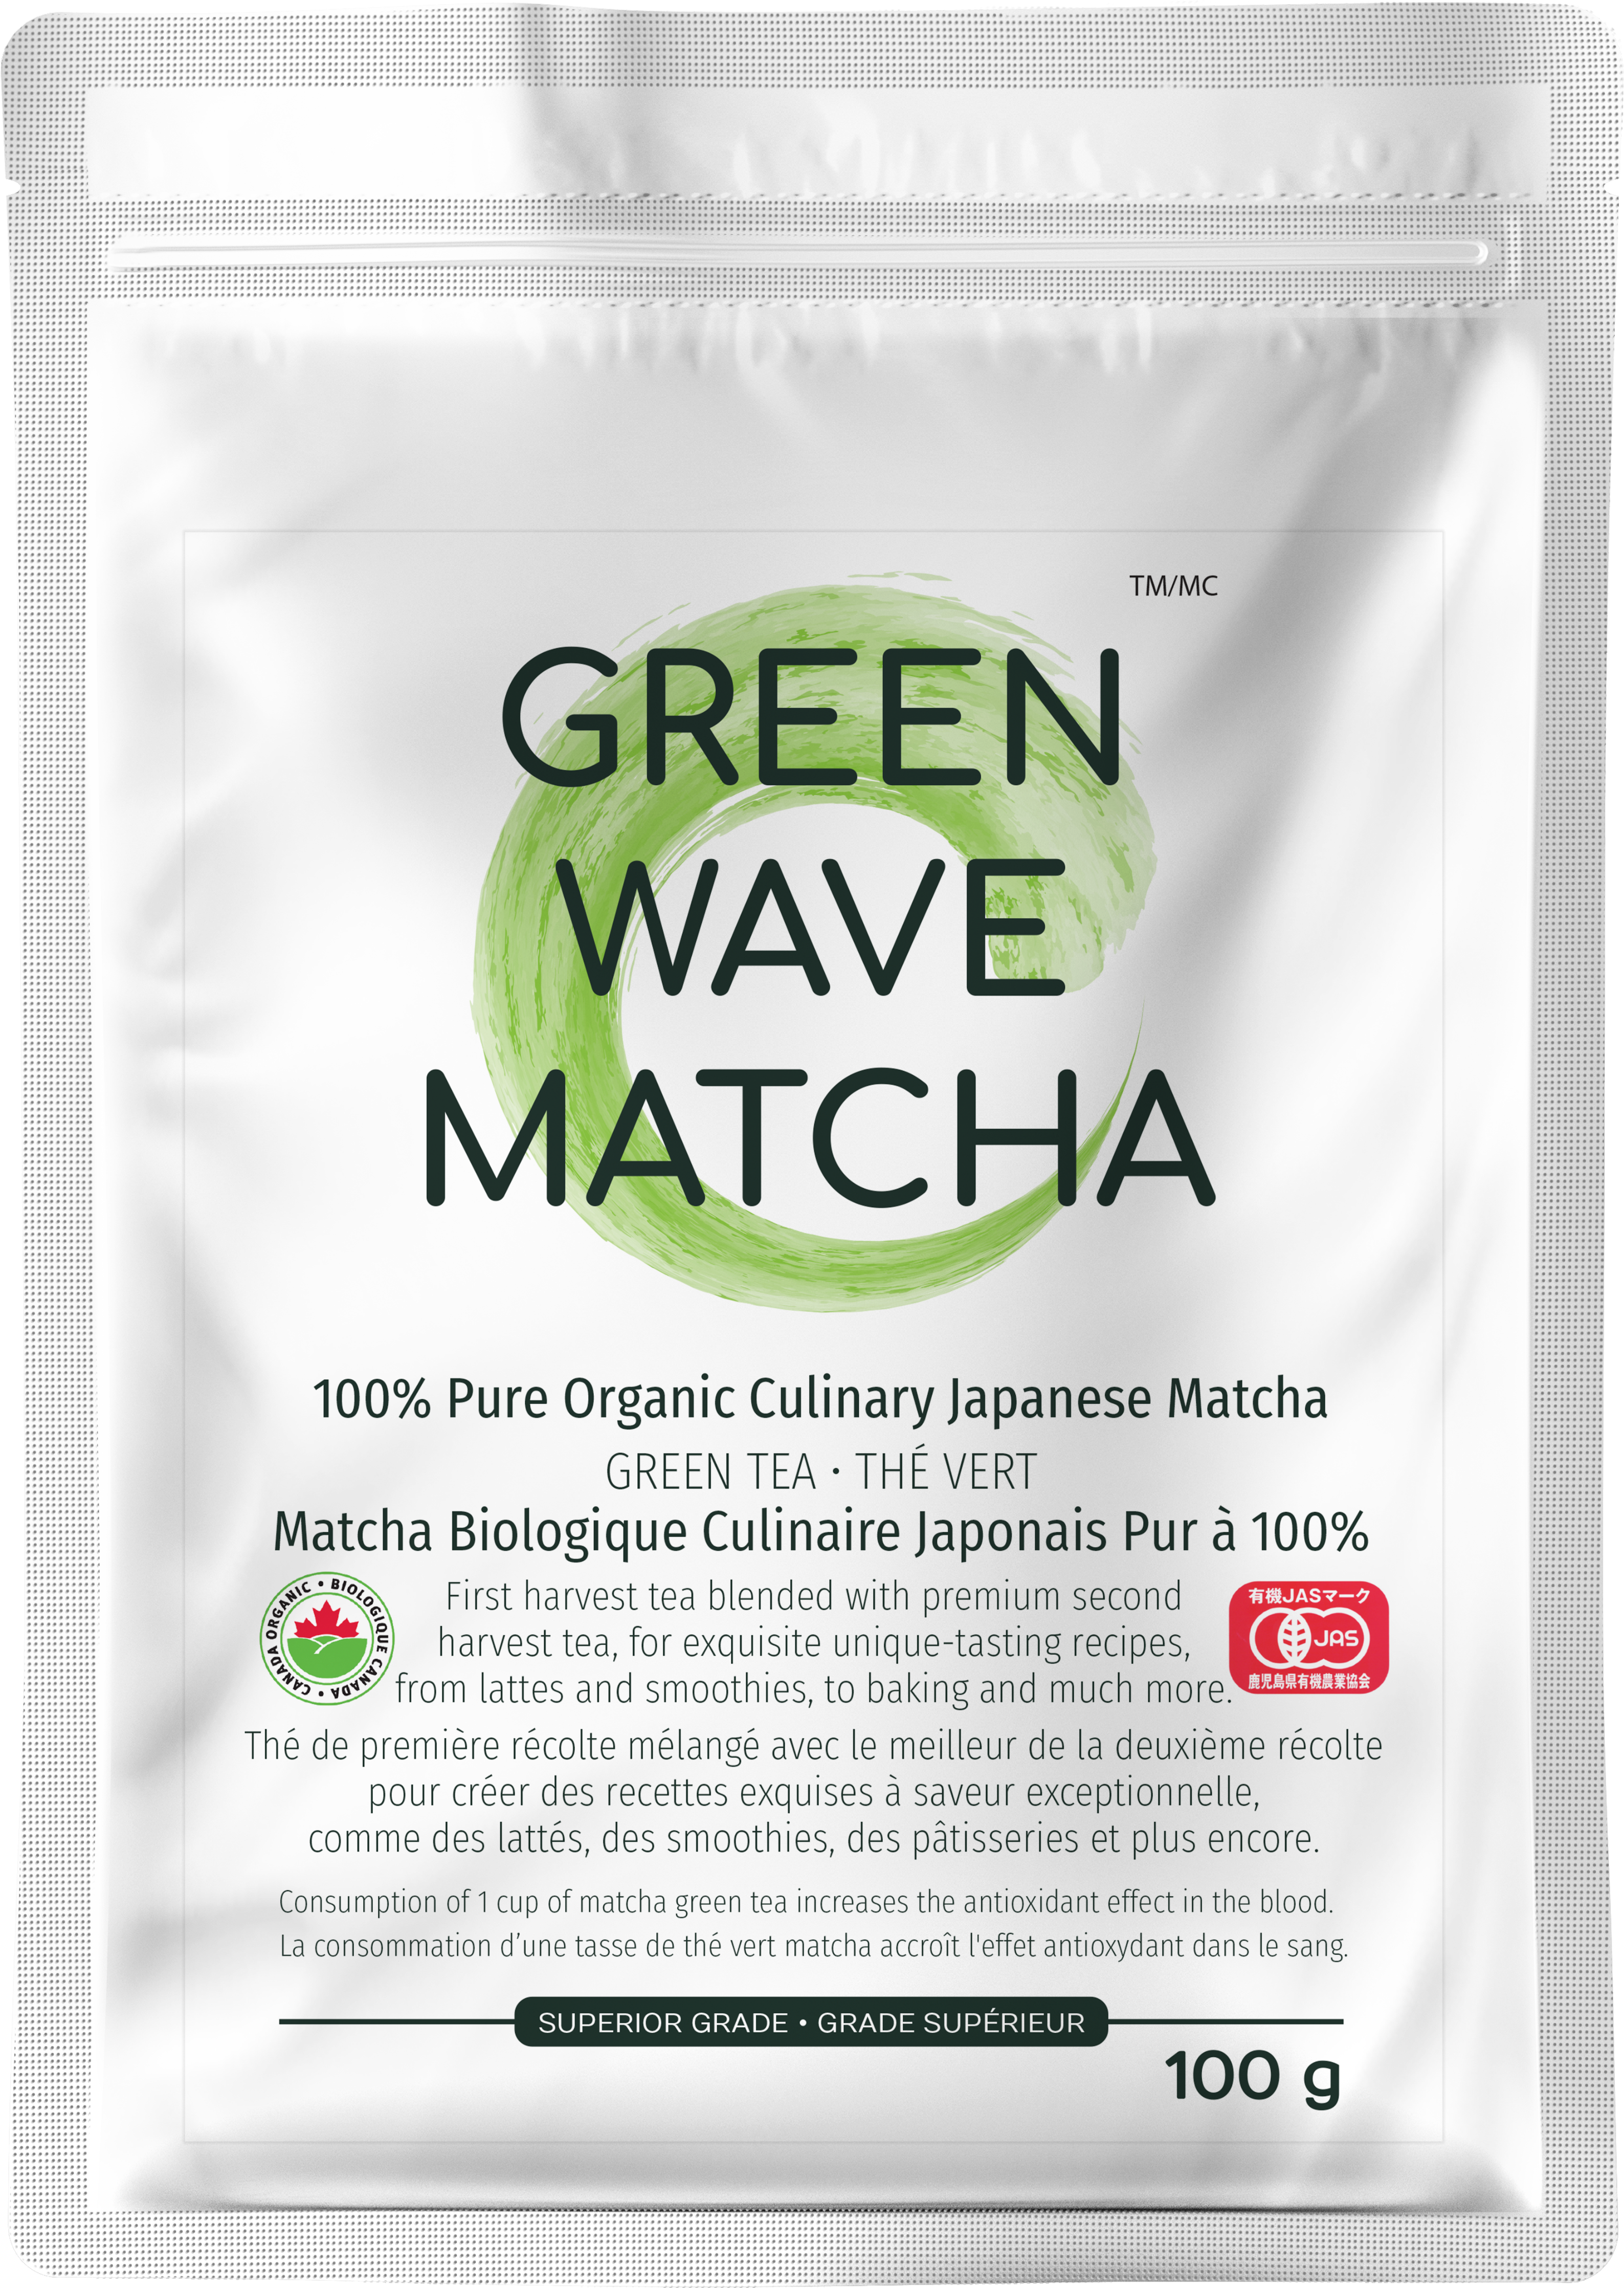 100g Organic Culinary Japanese Matcha